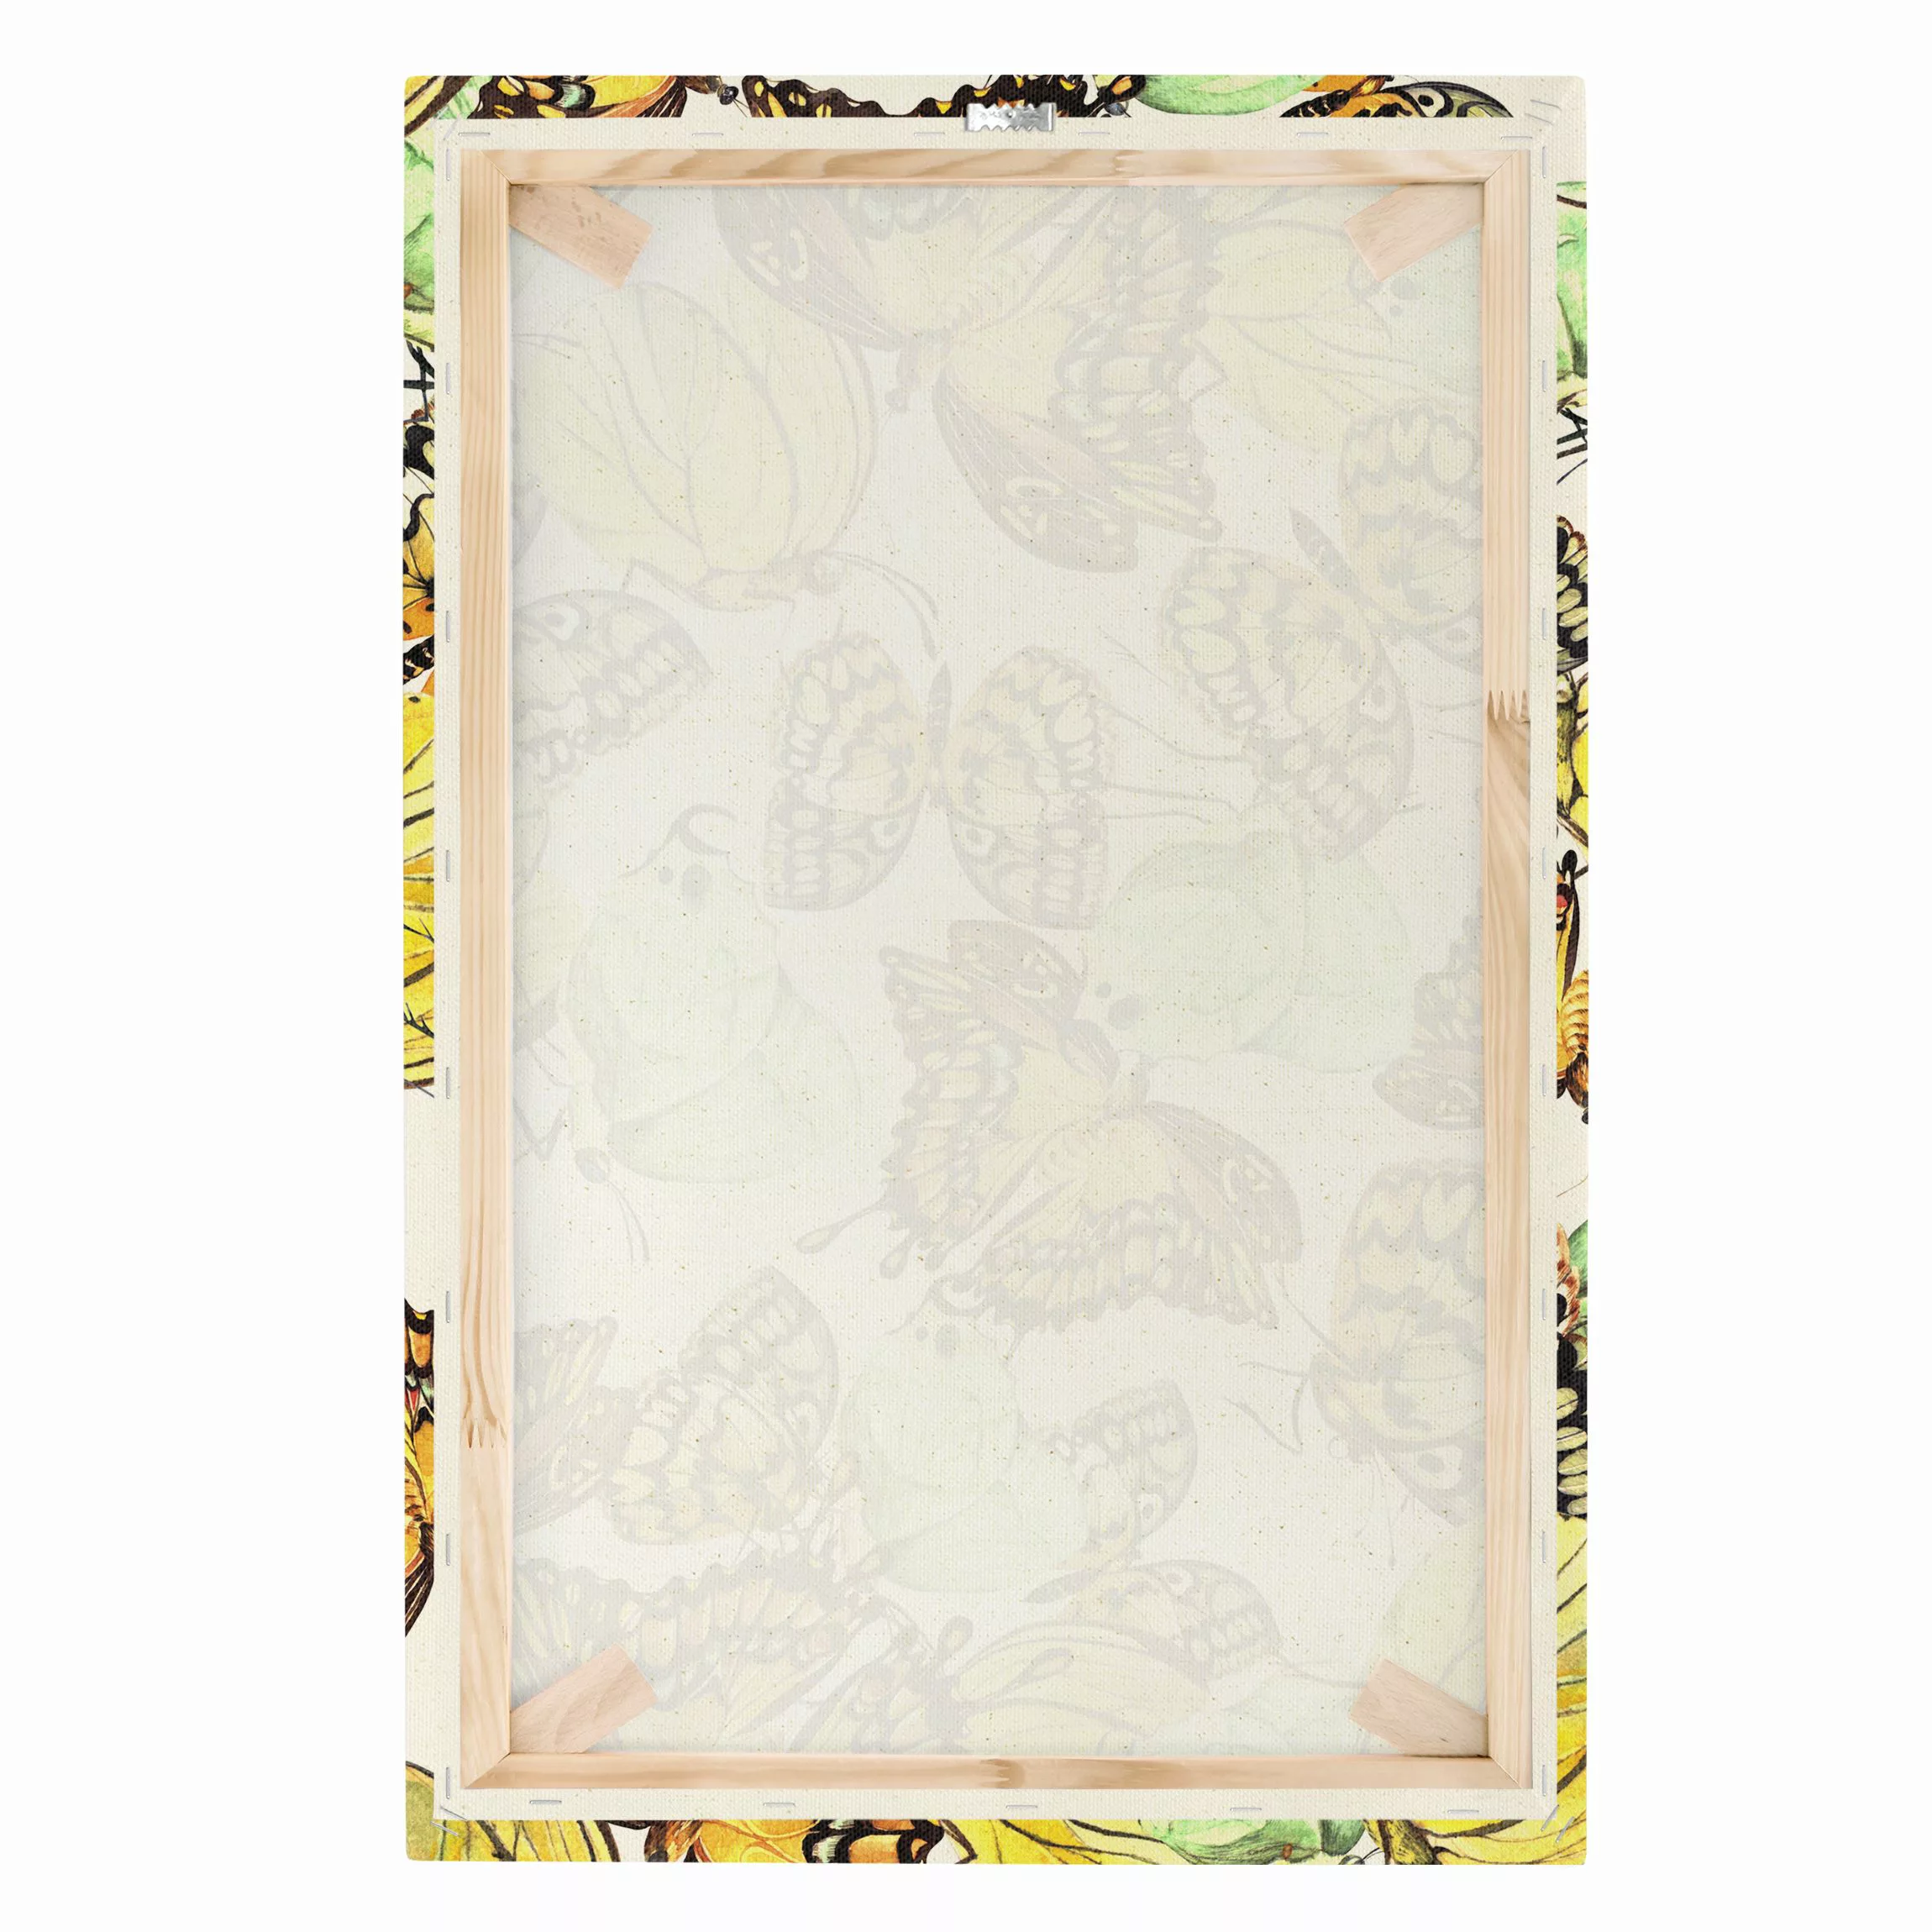 Leinwandbild auf Naturcanvas Schwarm von Gelben Schmetterlingen günstig online kaufen